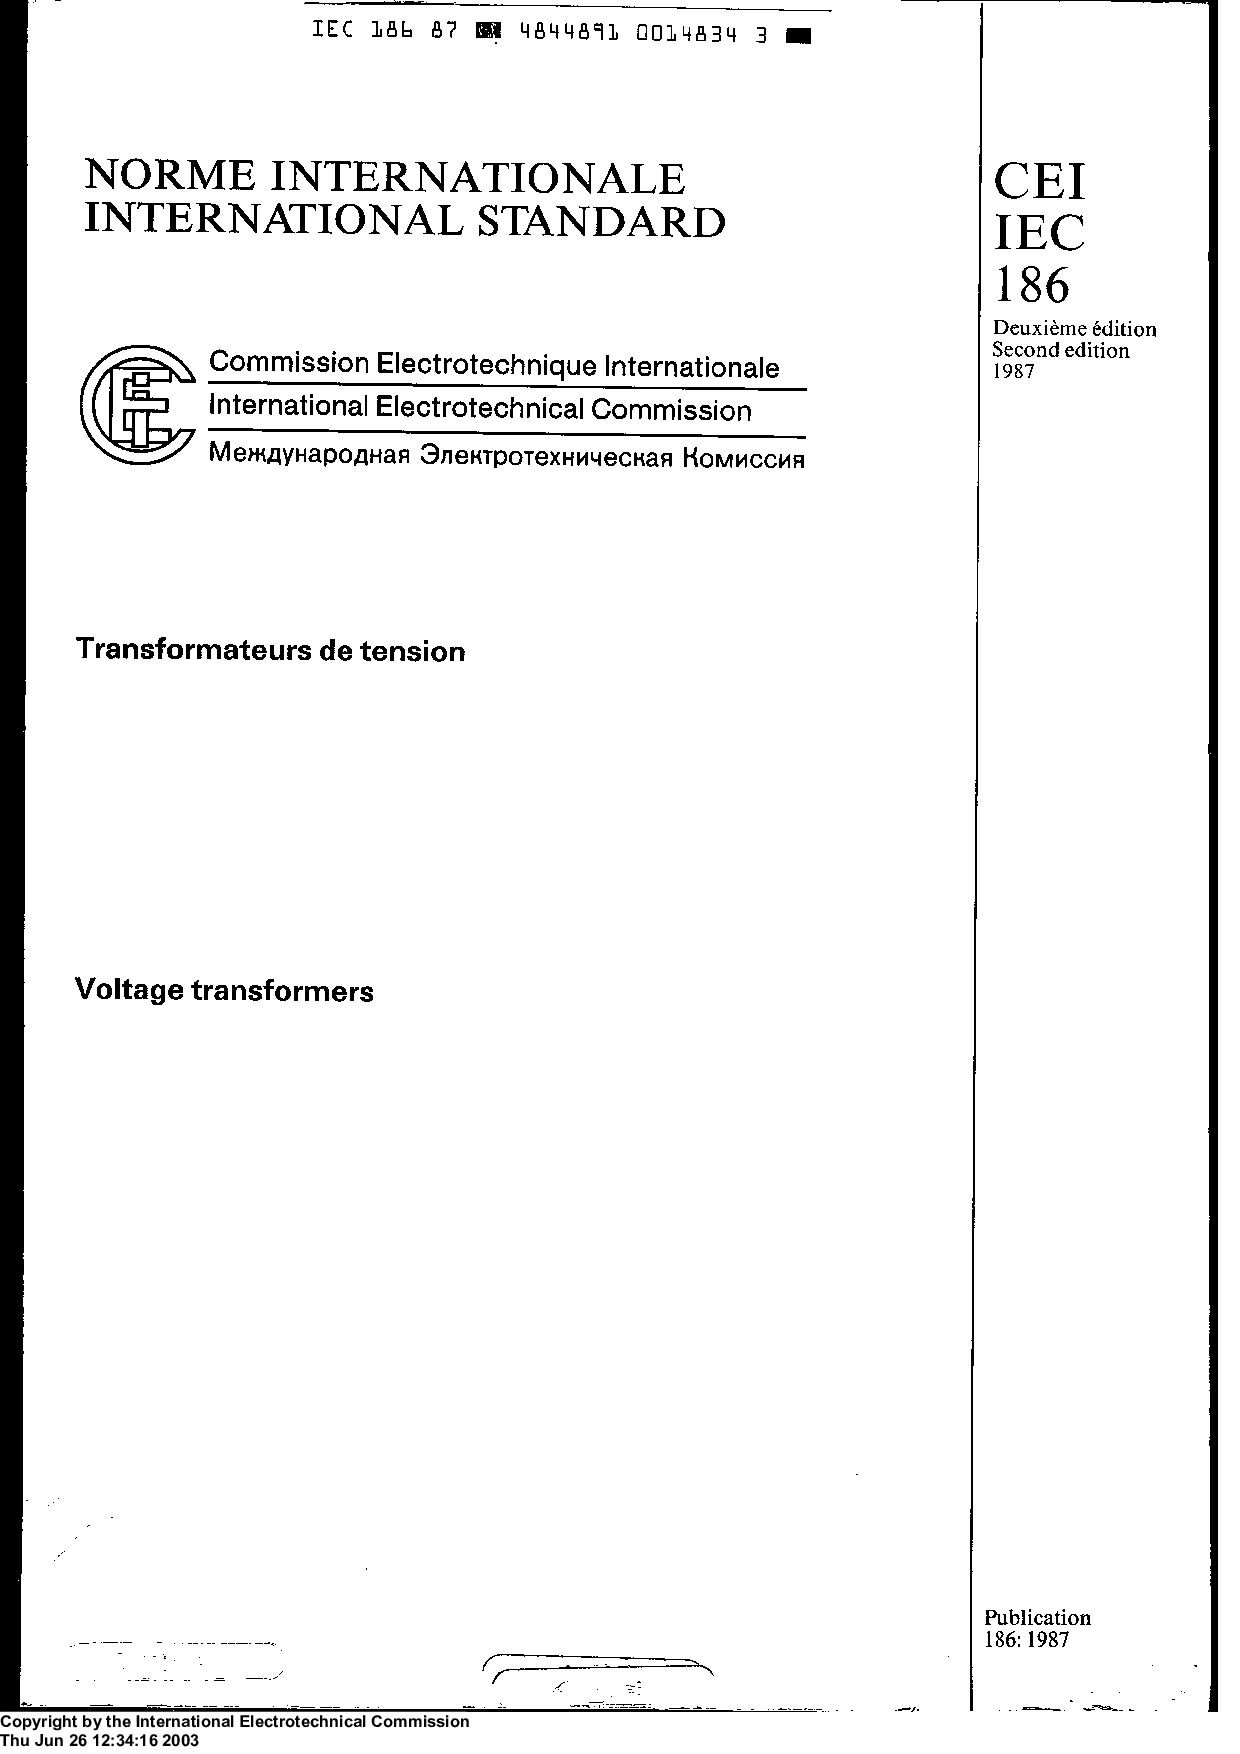 IEC 60186:1987